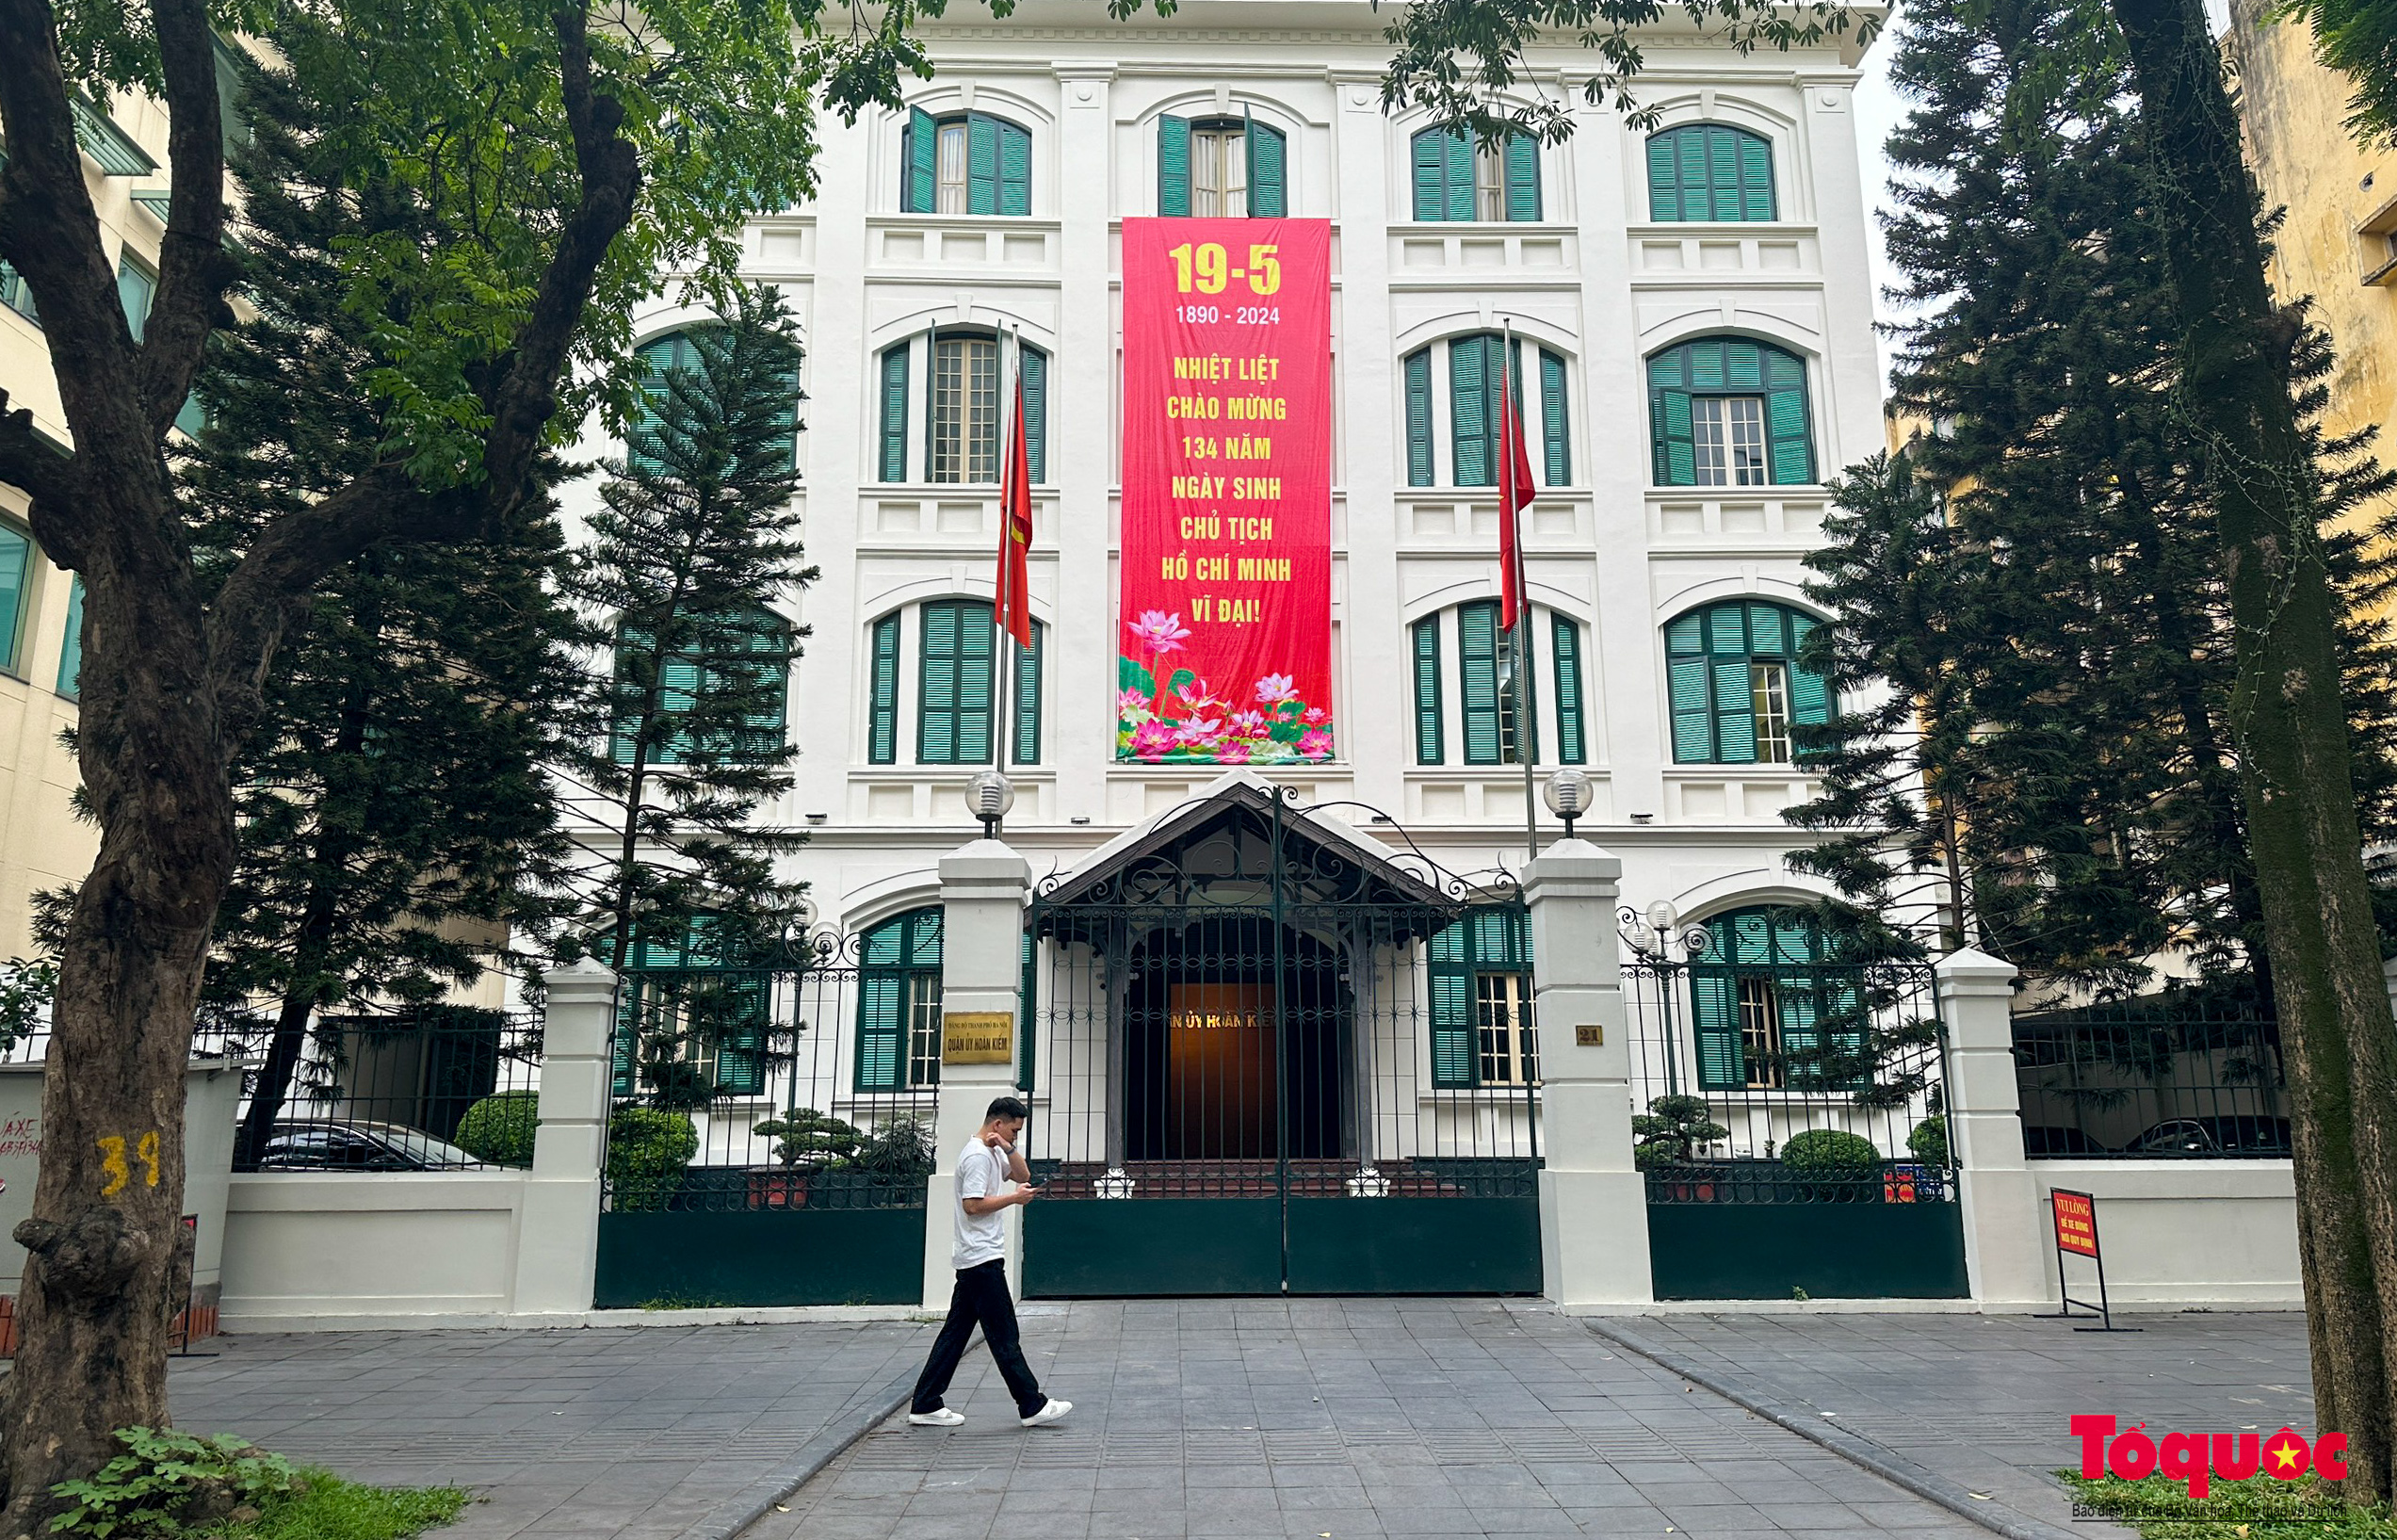 Hà Nội rợp cờ hoa chào mừng kỷ niệm 134 năm Ngày sinh Chủ tịch Hồ Chí Minh - Ảnh 9.